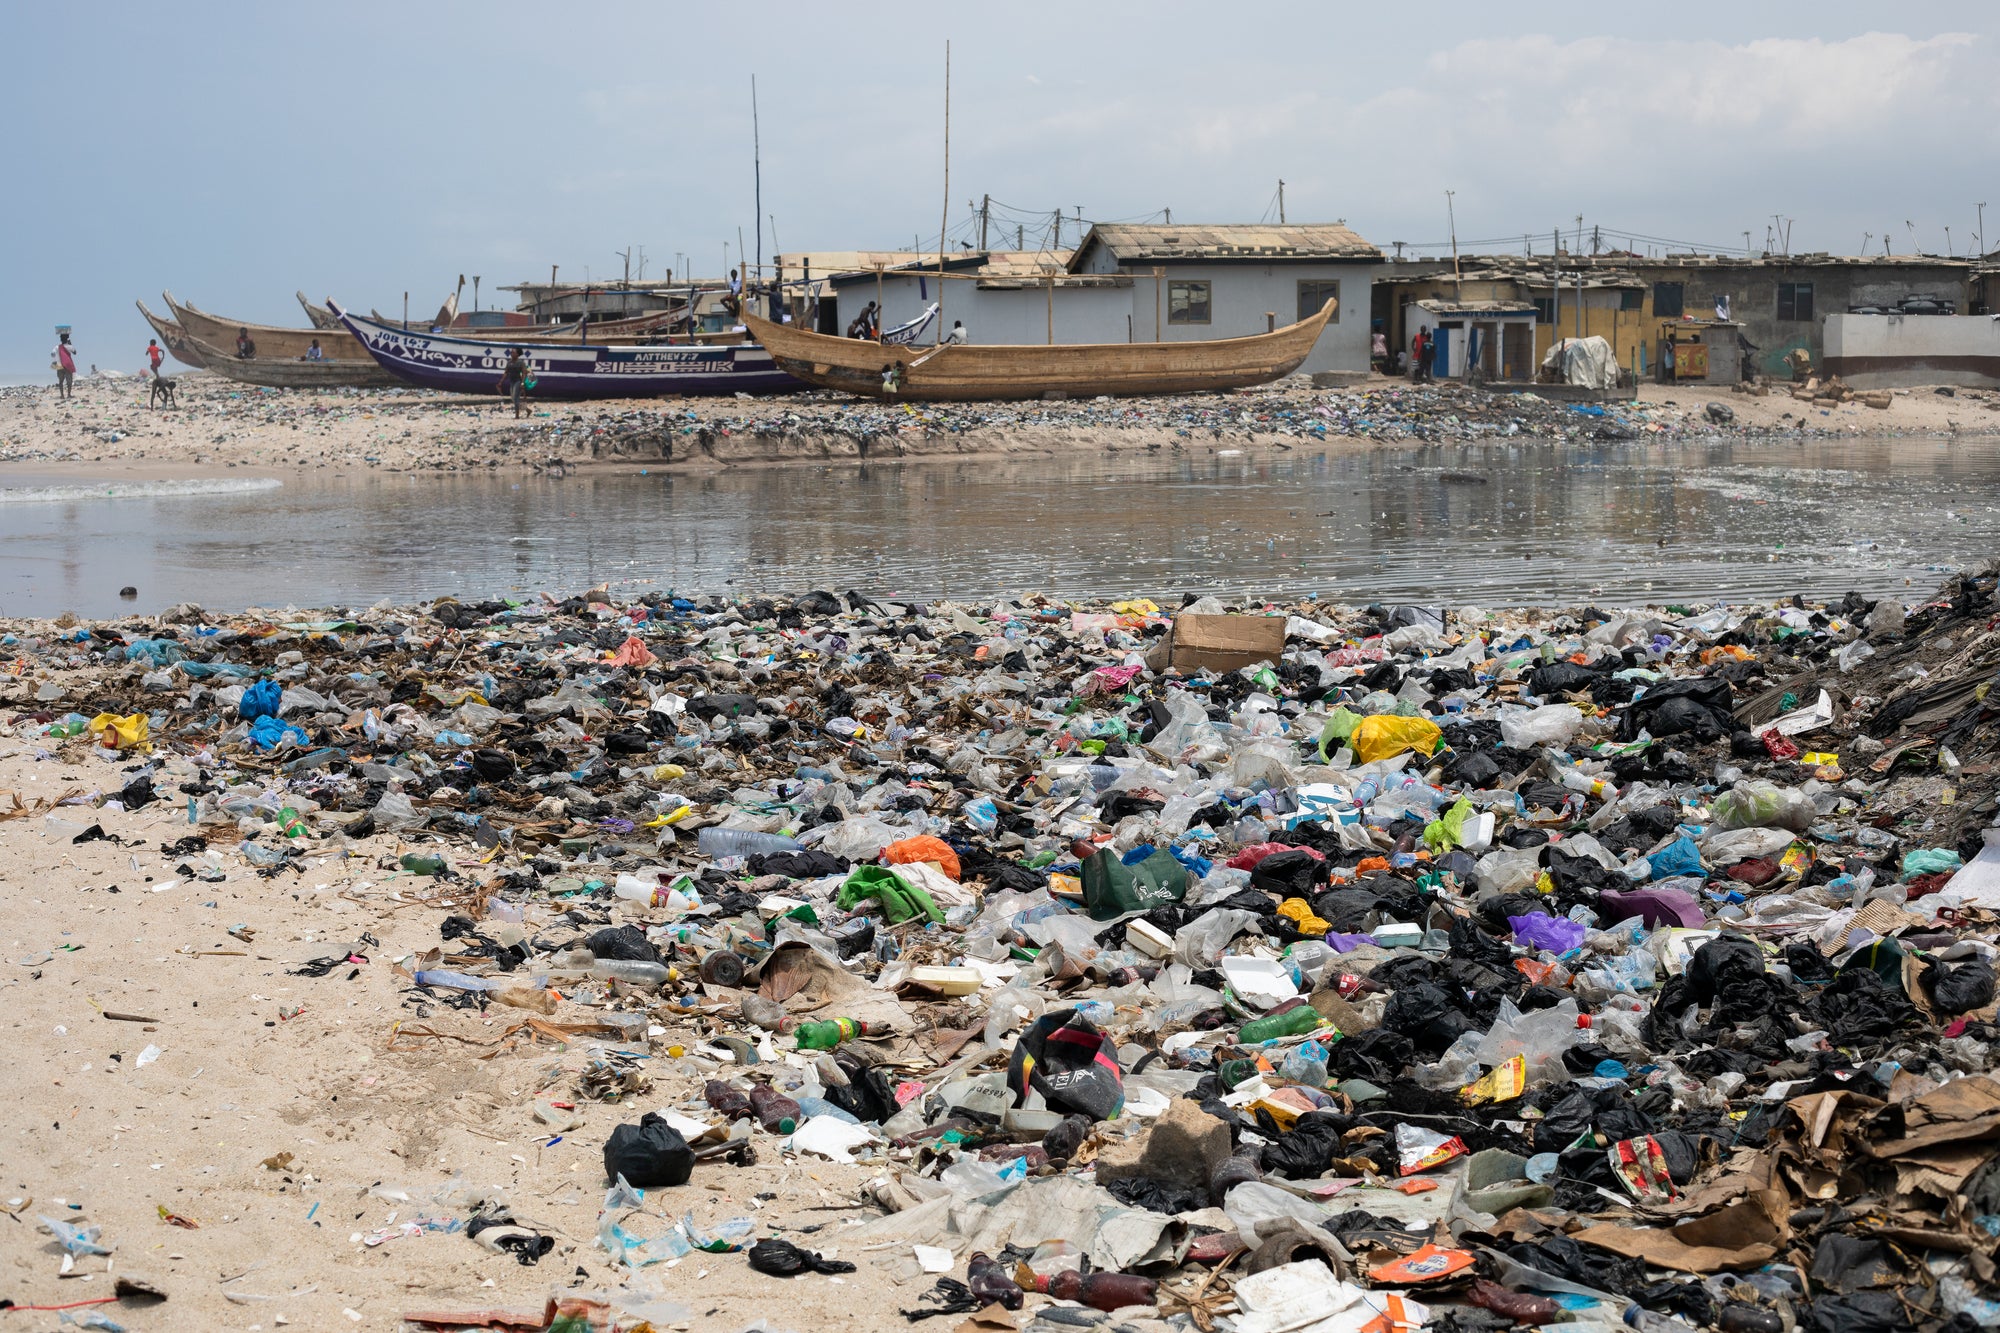 Plastik im Meer: Wie können wir helfen?